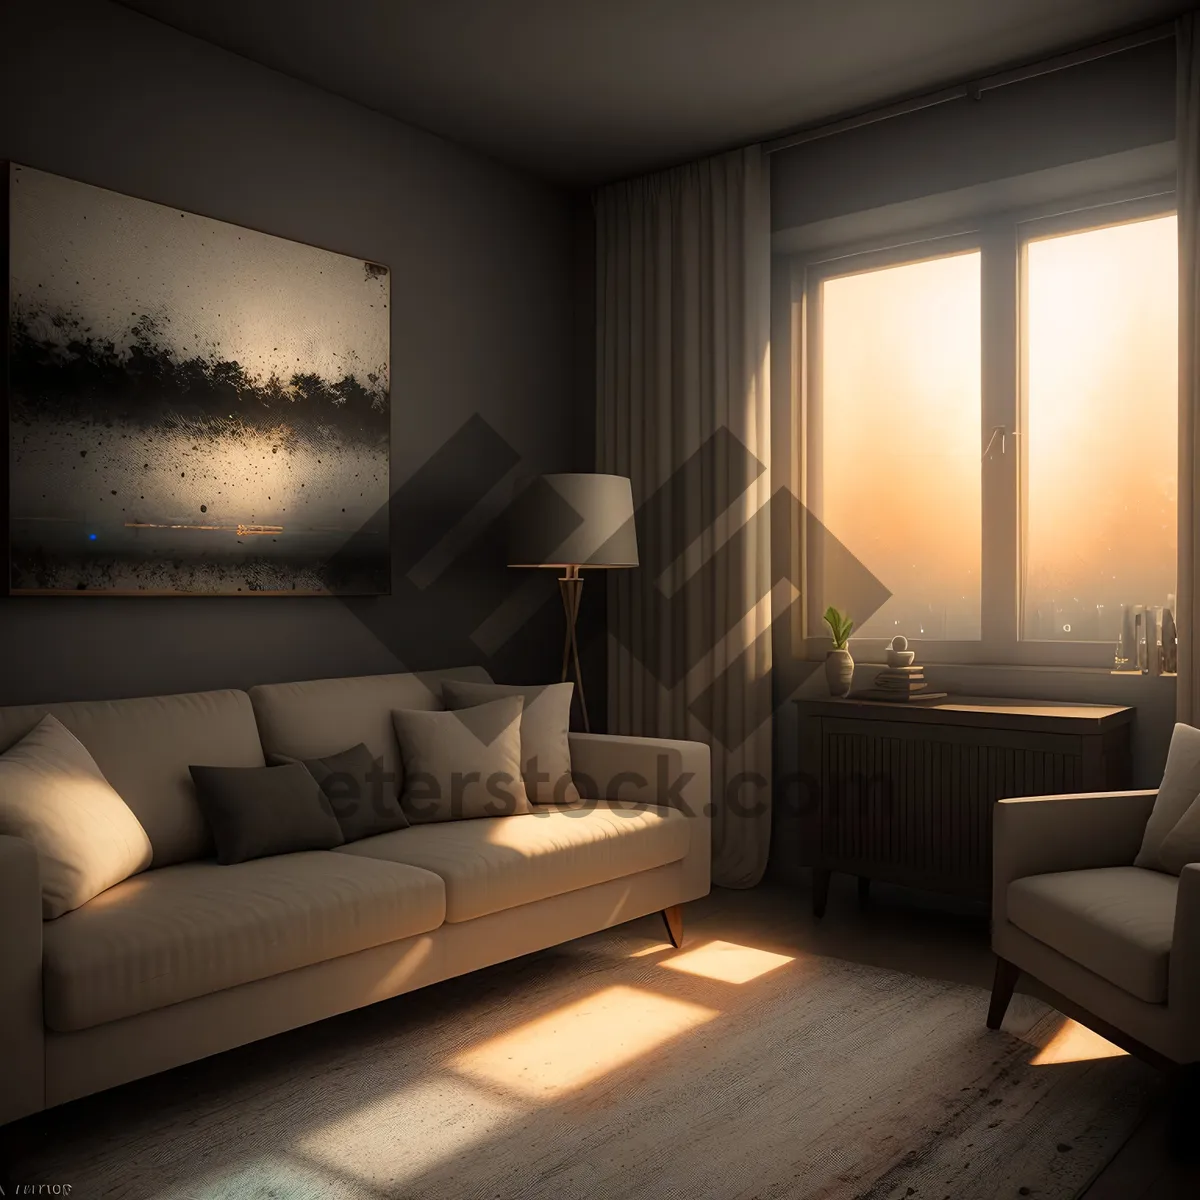 Picture of Modern Comfort: Elegant Interior Design with Cozy Sofa